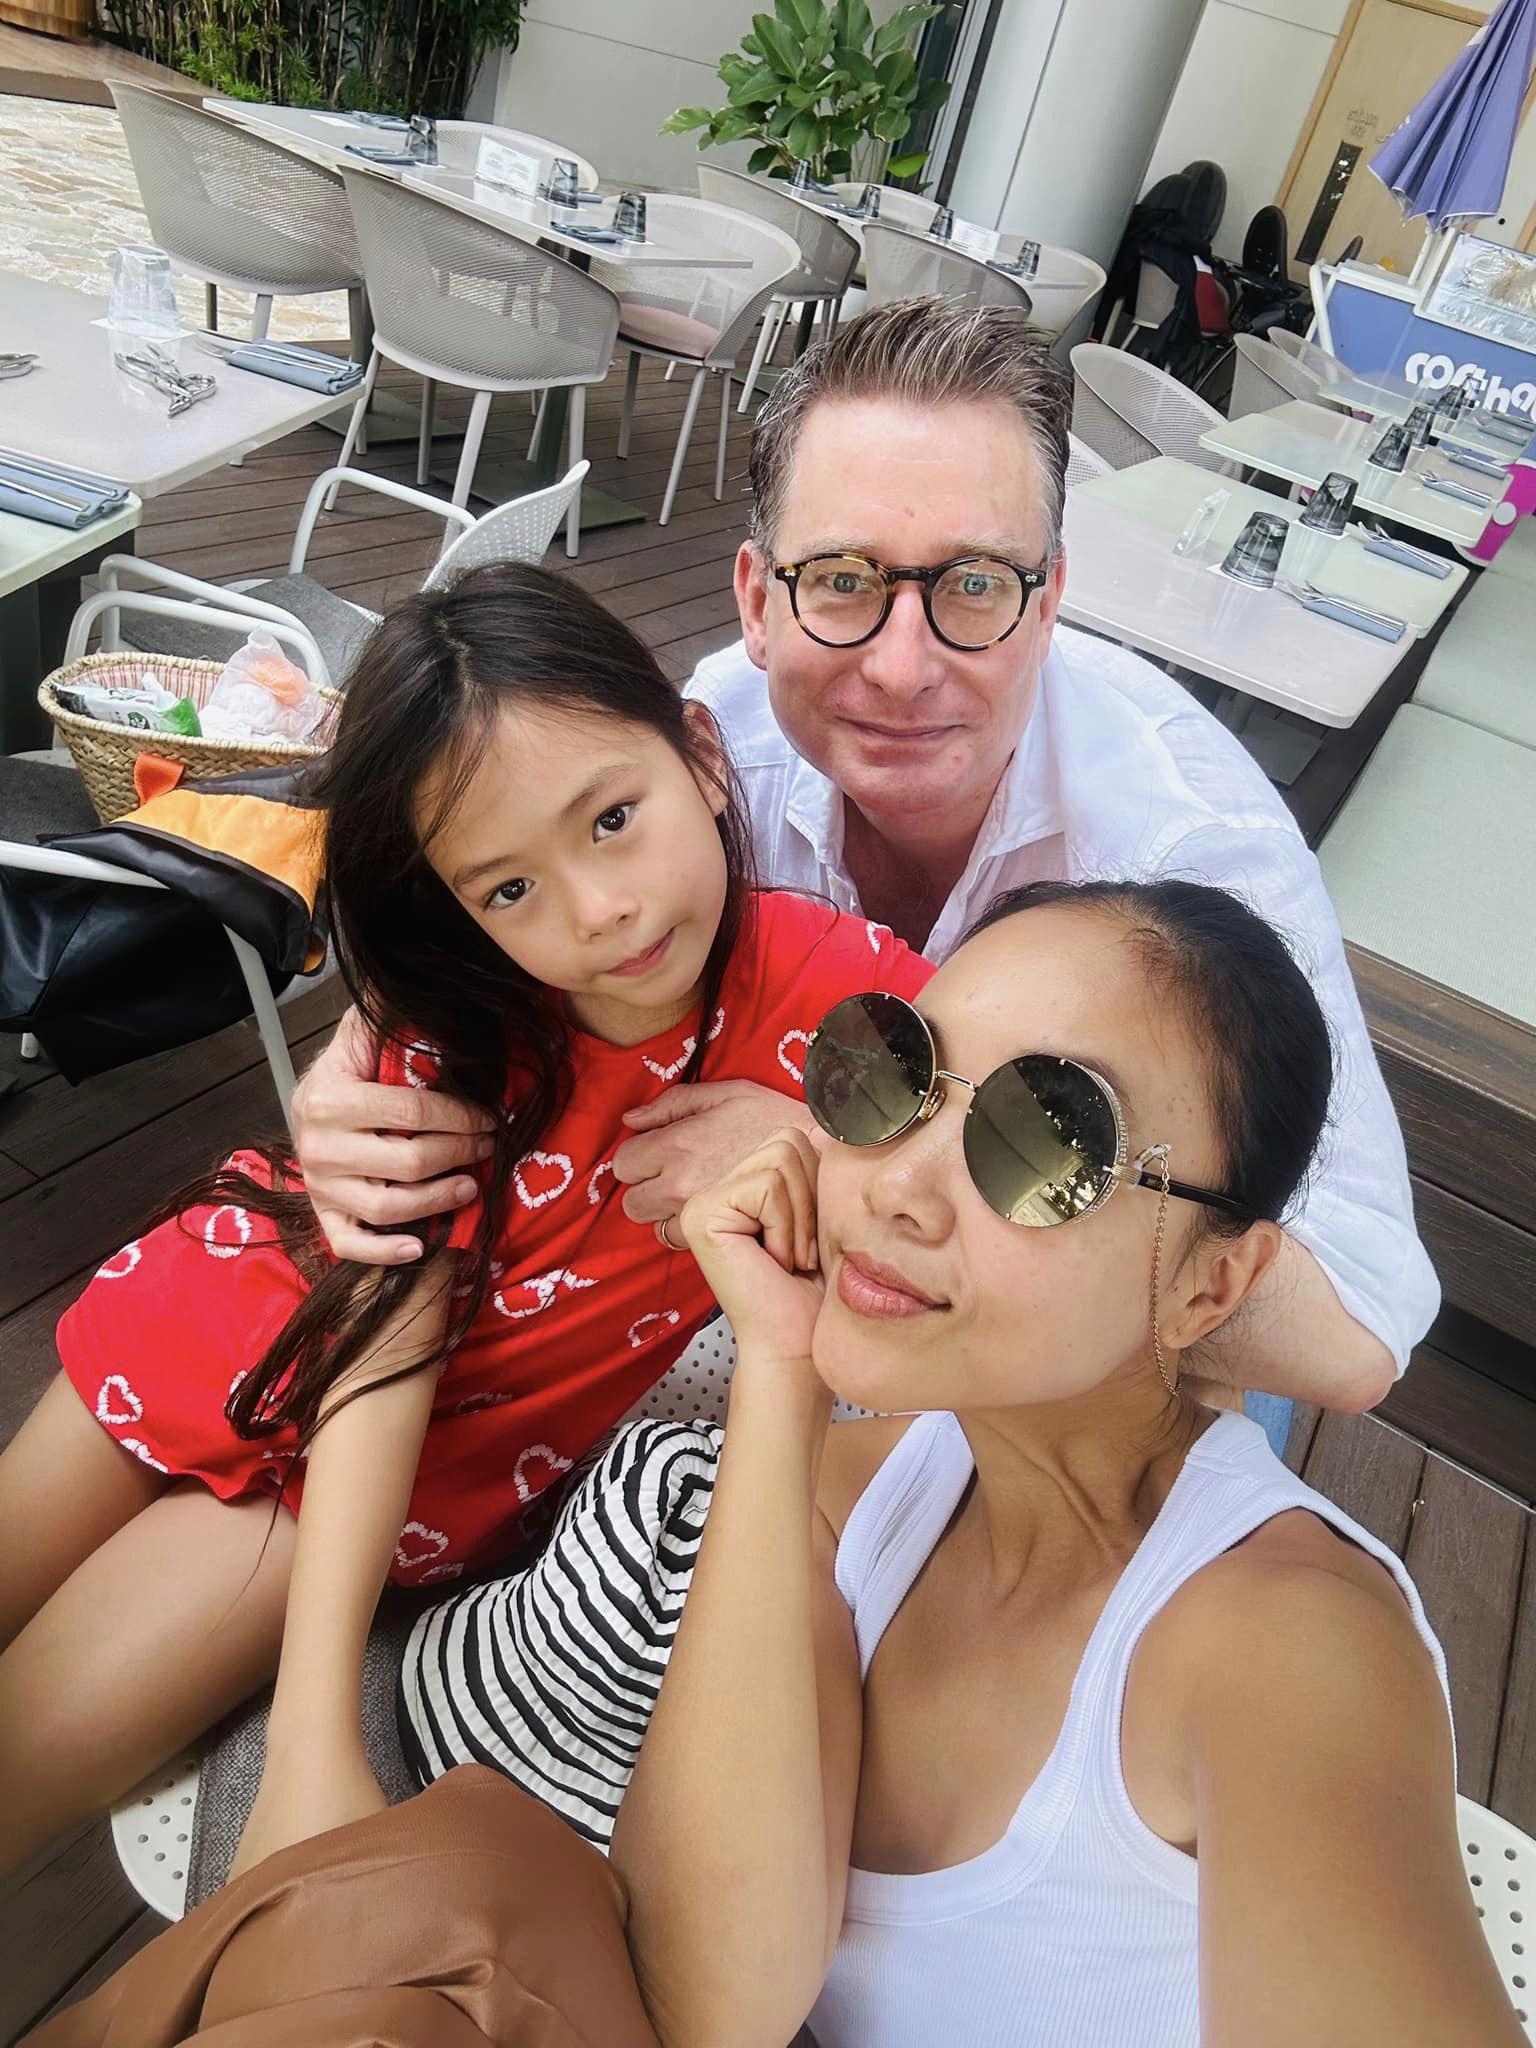 Đoan Trang tiết lộ cuộc sống với chồng Tây: “Vợ chồng tôi giống Ngưu Lang - Chức Nữ...”